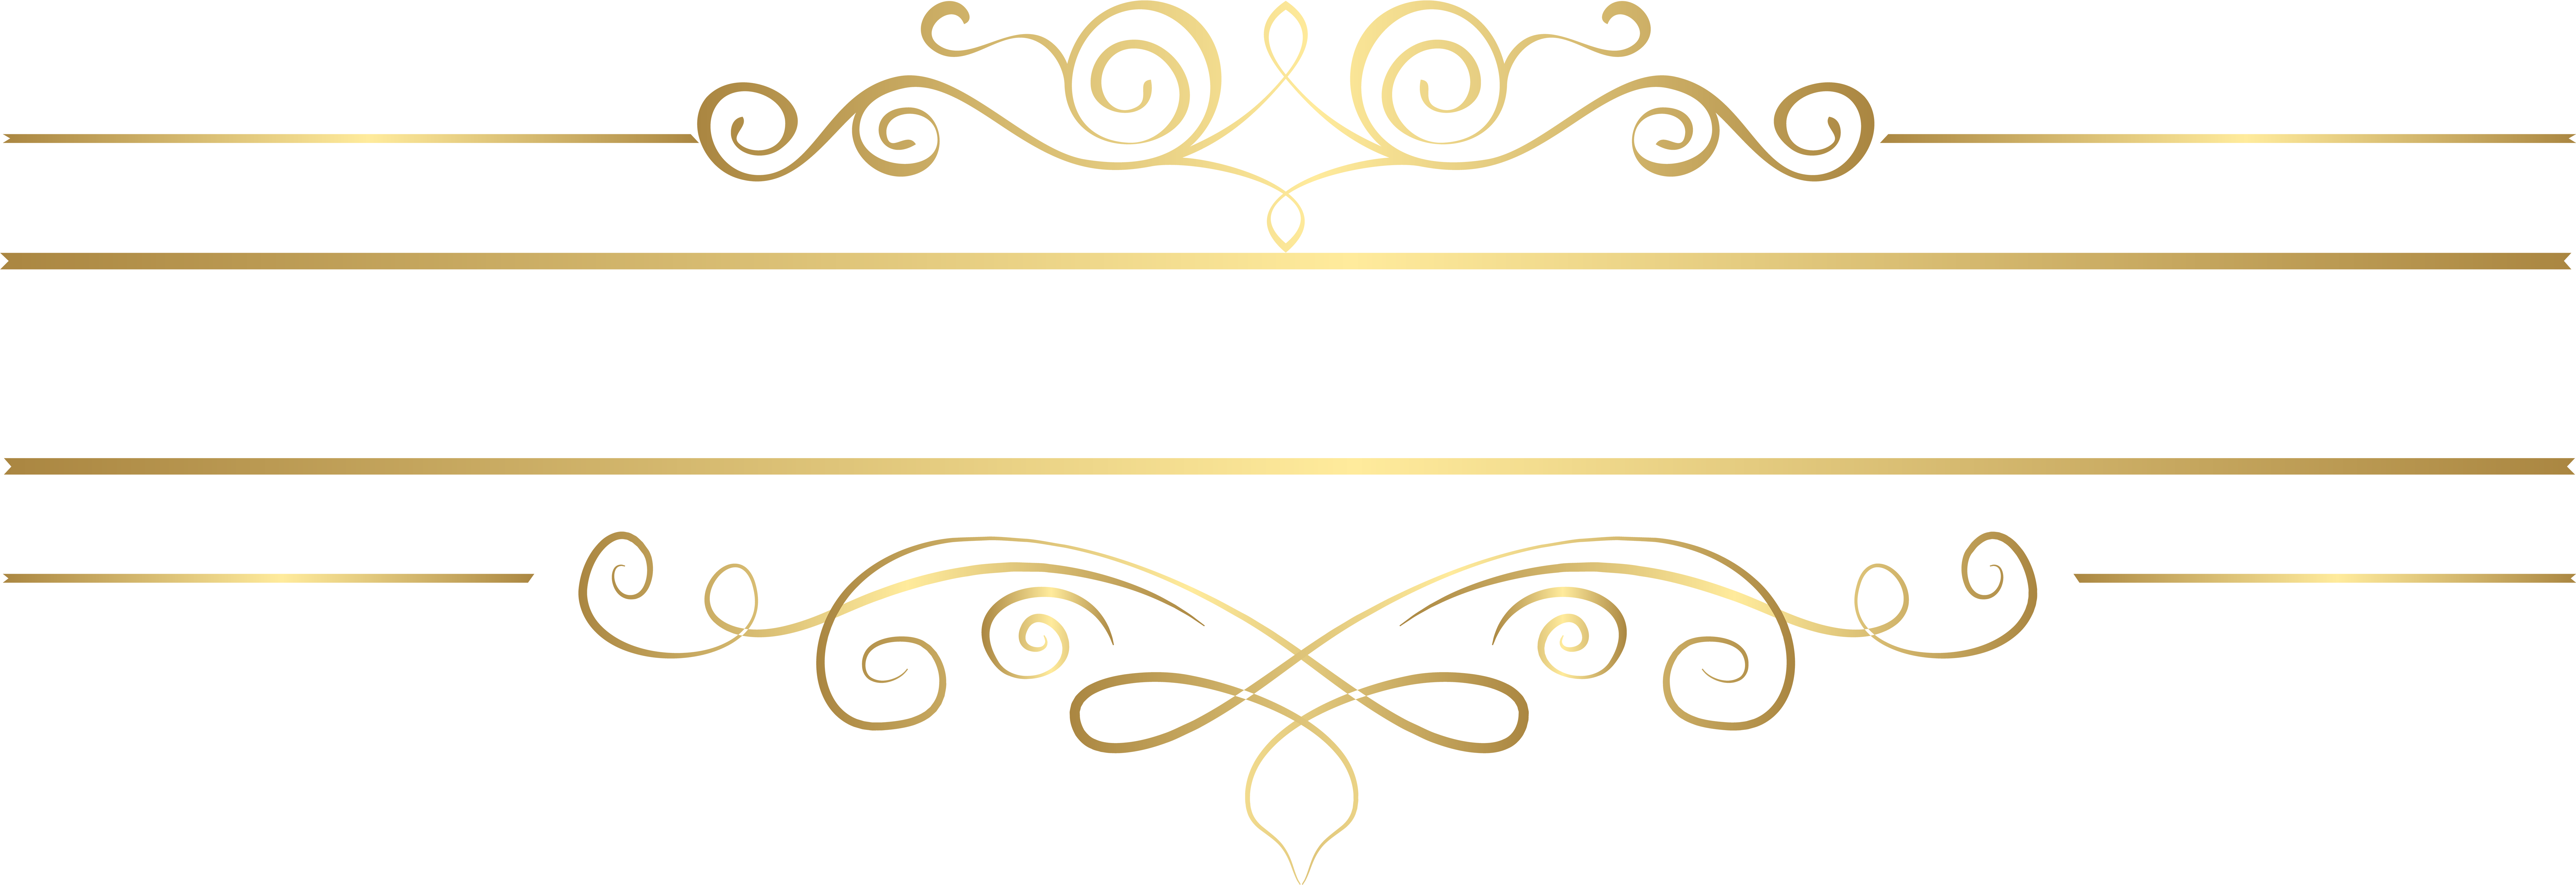 Gold Decorative Lines Png Transparent Background Decorative Elements